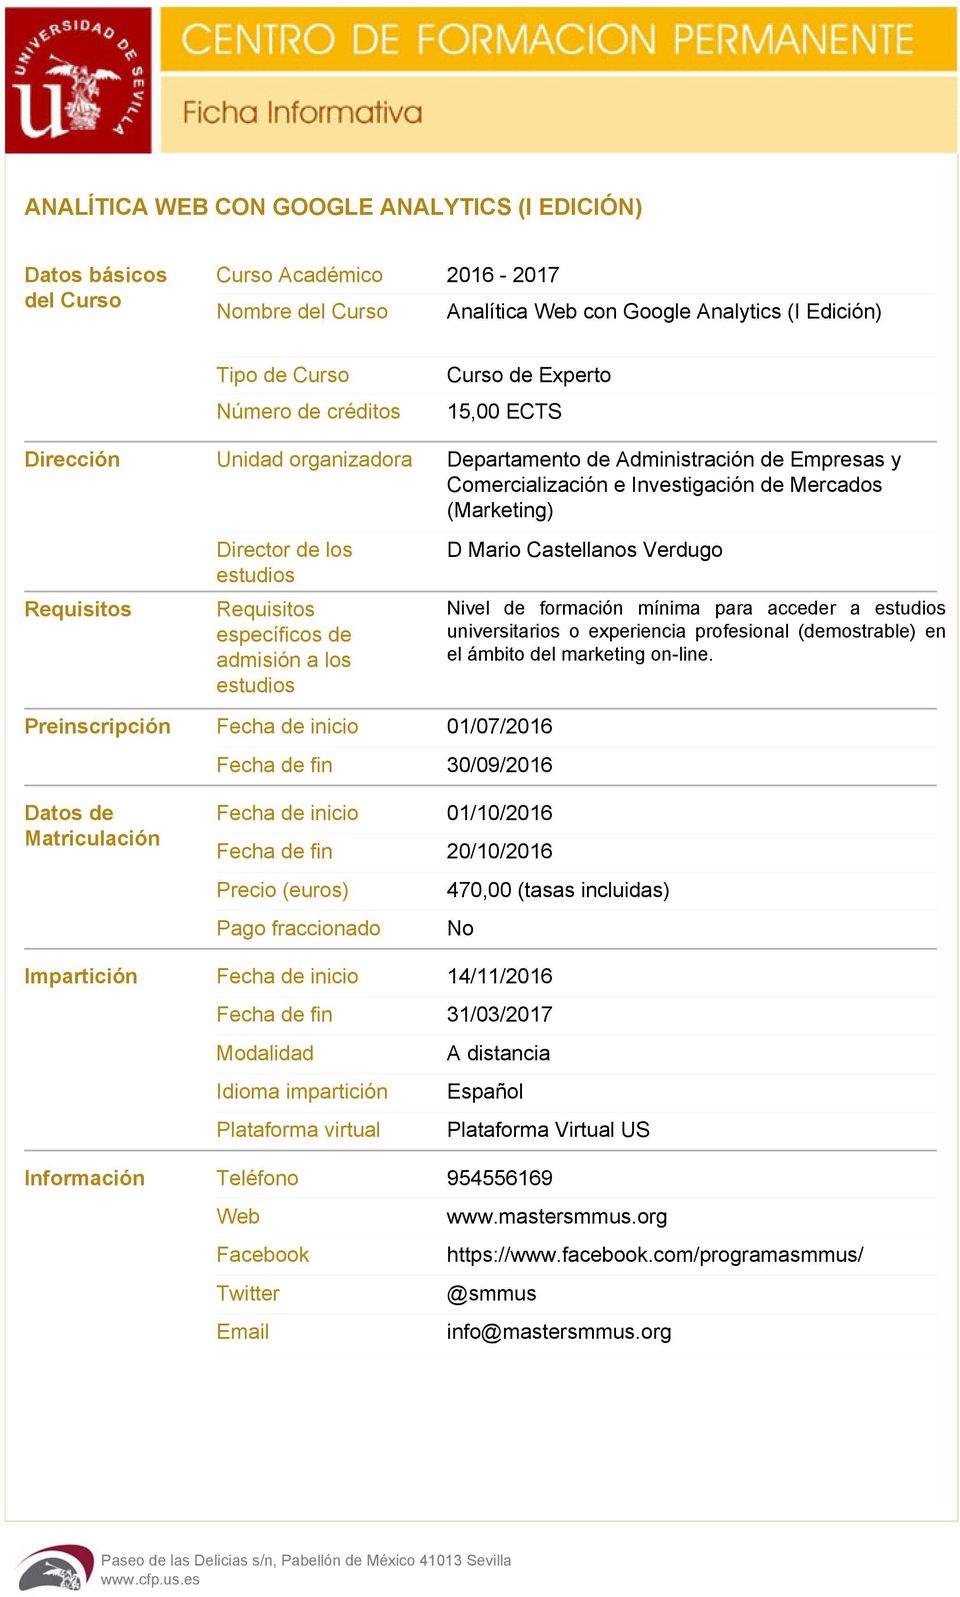 Requisitos específicos de admisión a los estudios D Mario Castellanos Verdugo Nivel de formación mínima para acceder a estudios universitarios o experiencia profesional (demostrable) en el ámbito del